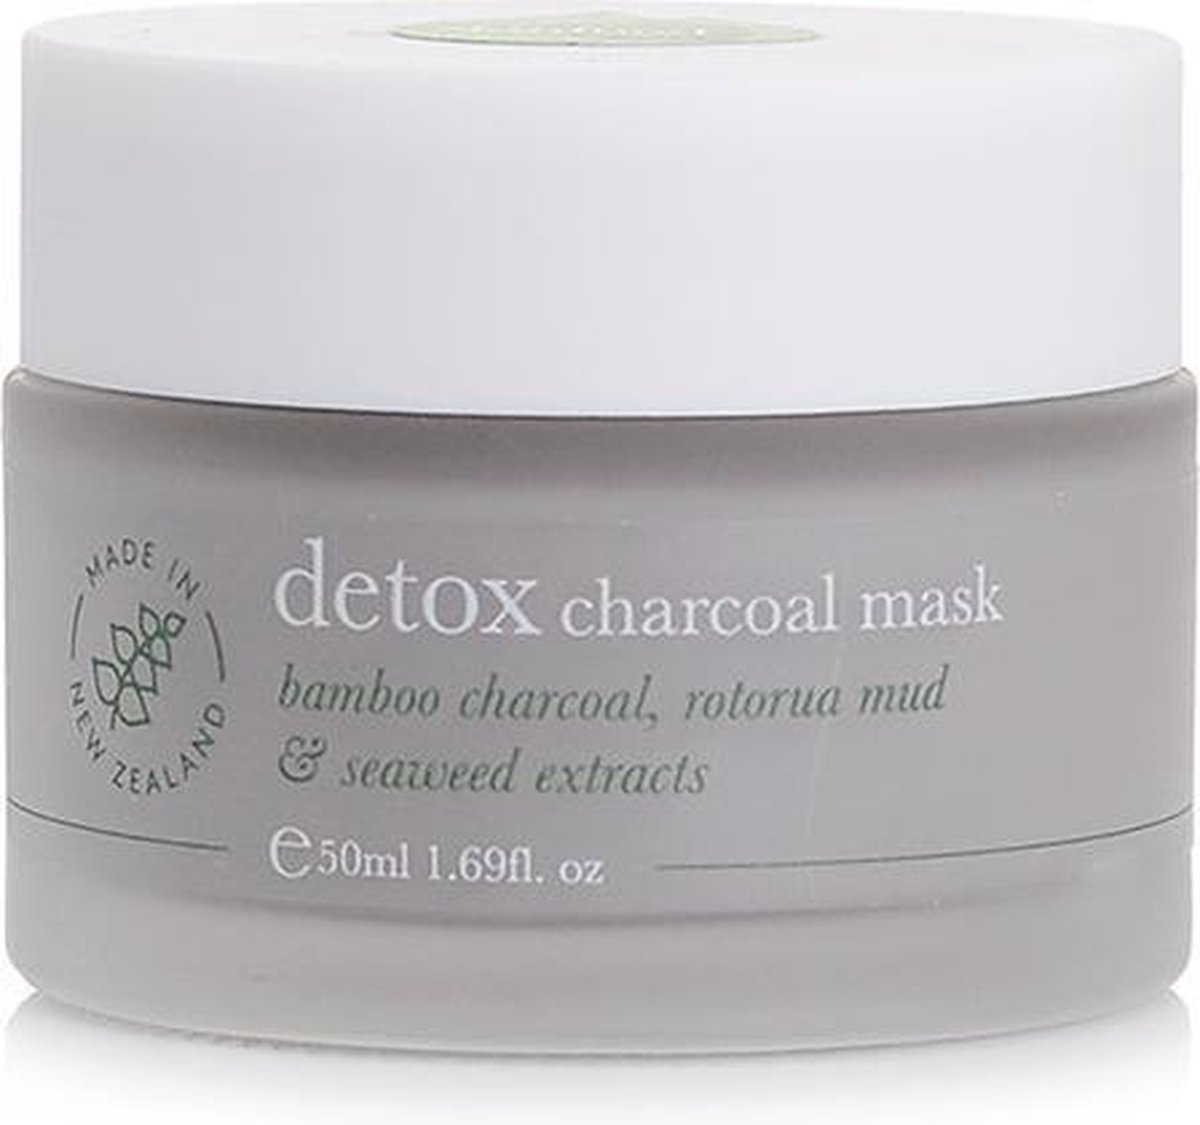 SKINFOOD NZ Skincare Detox Charcoal Mask - Gezichtsmasker - Voor Normale tot Vettige Huid - Vegan & Dierproefvrij - 100ml